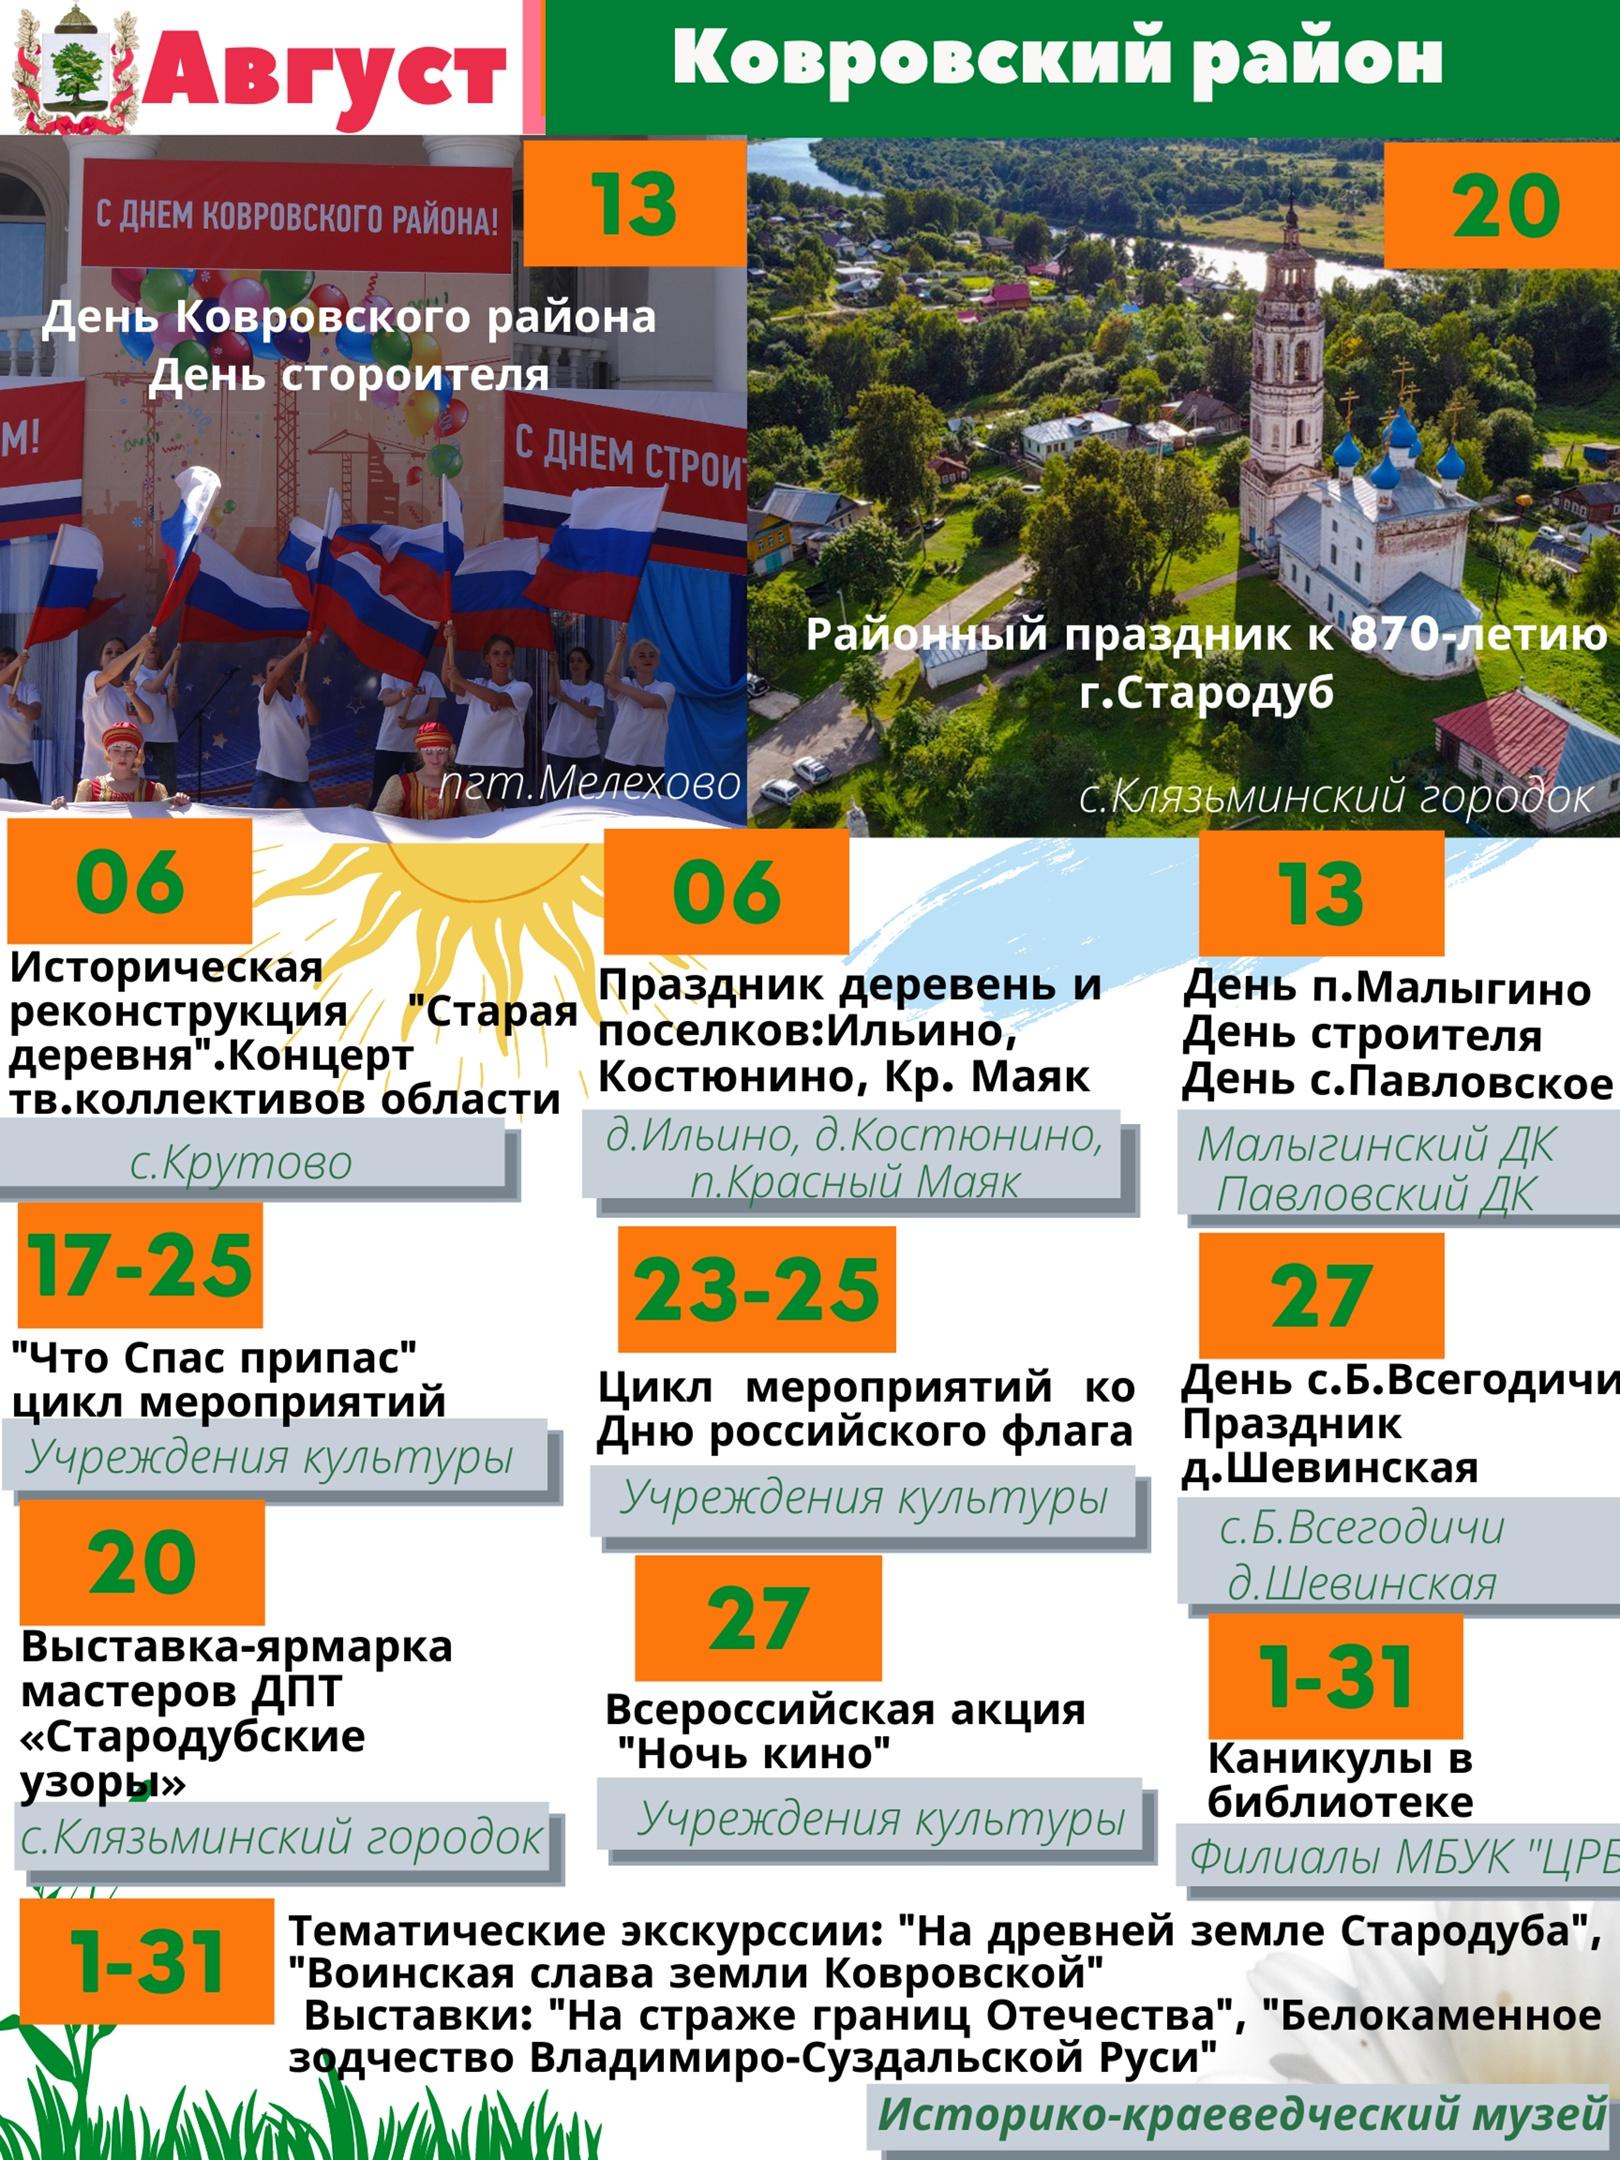 Интересные мероприятия Ковровского района в июле/августе